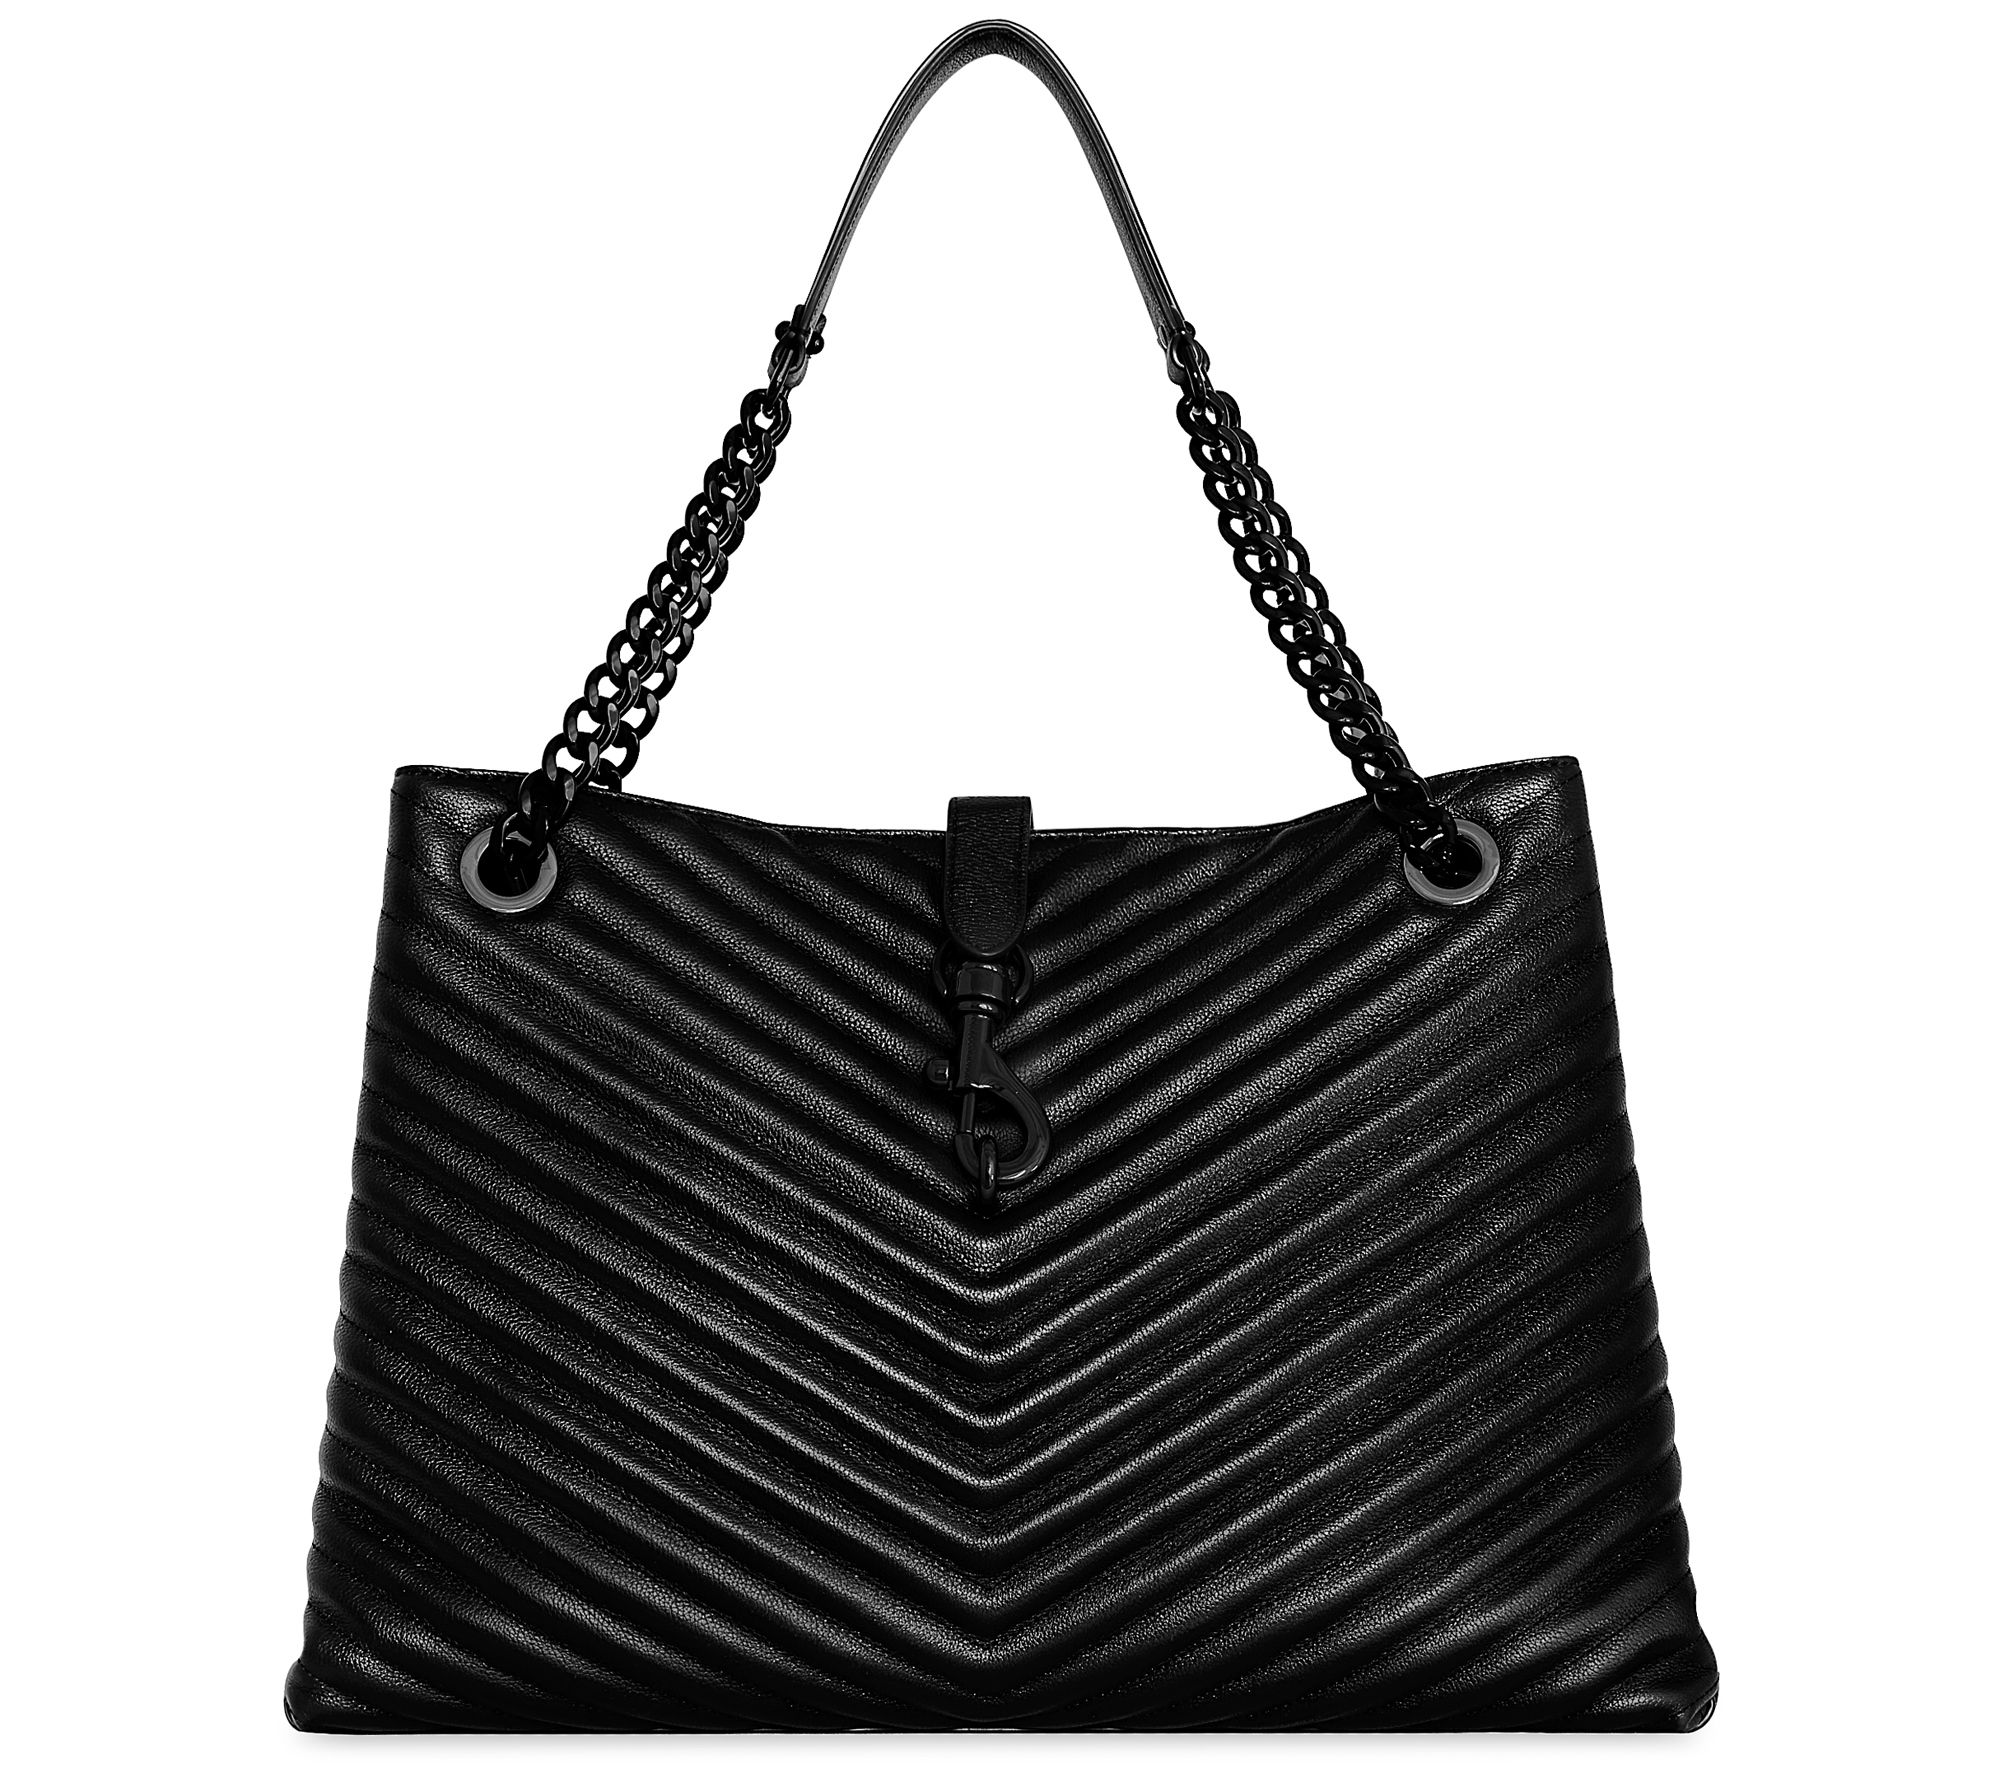 Authentic Louis Vuitton Chanel medallion Tote bag – JOY'S CLASSY